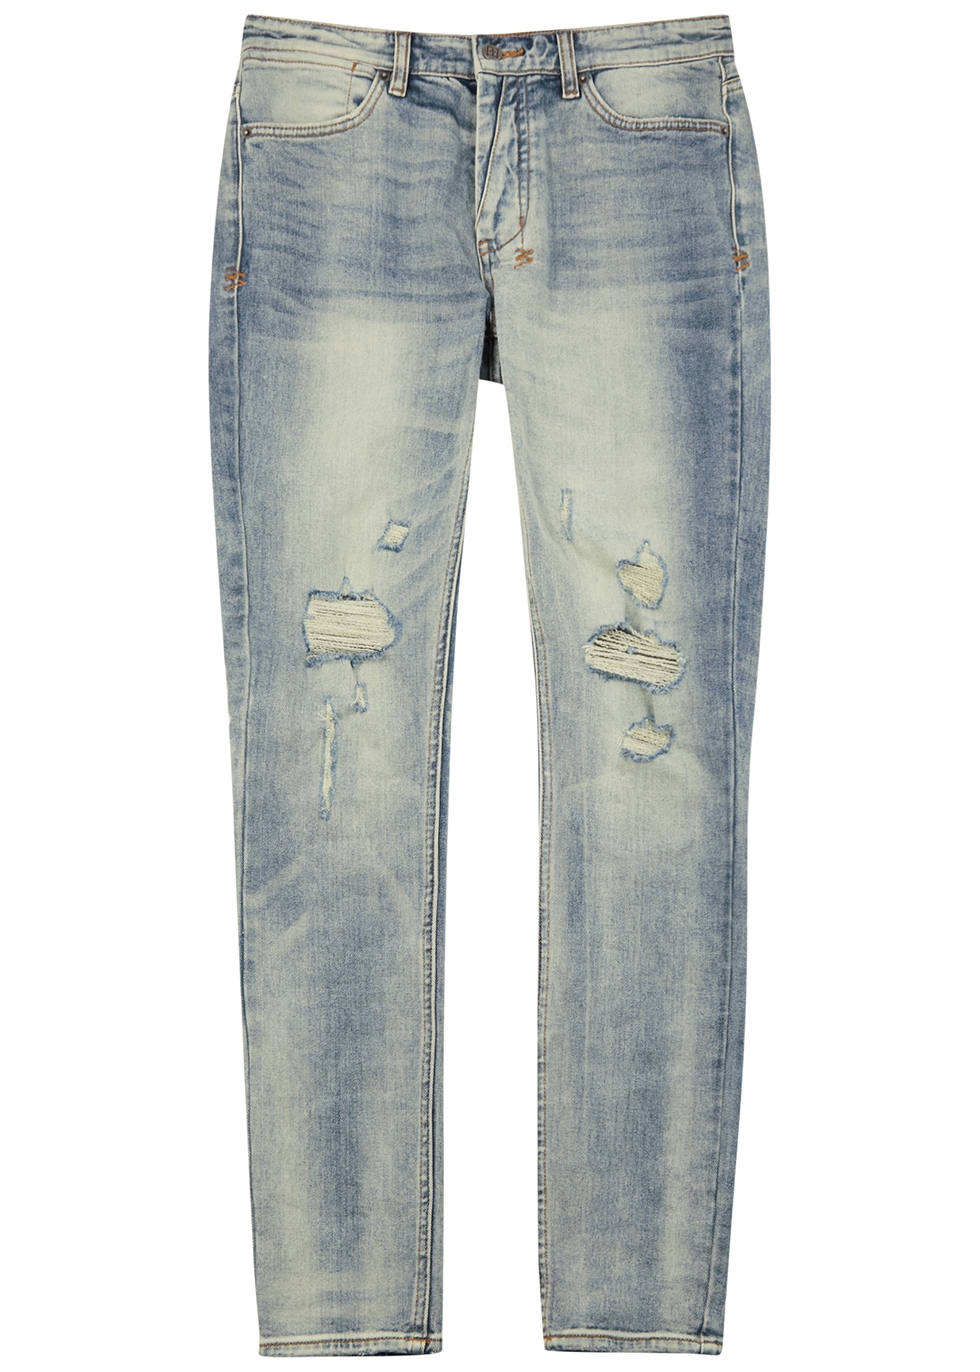 Van Winkle light blue distressed skinny jeans